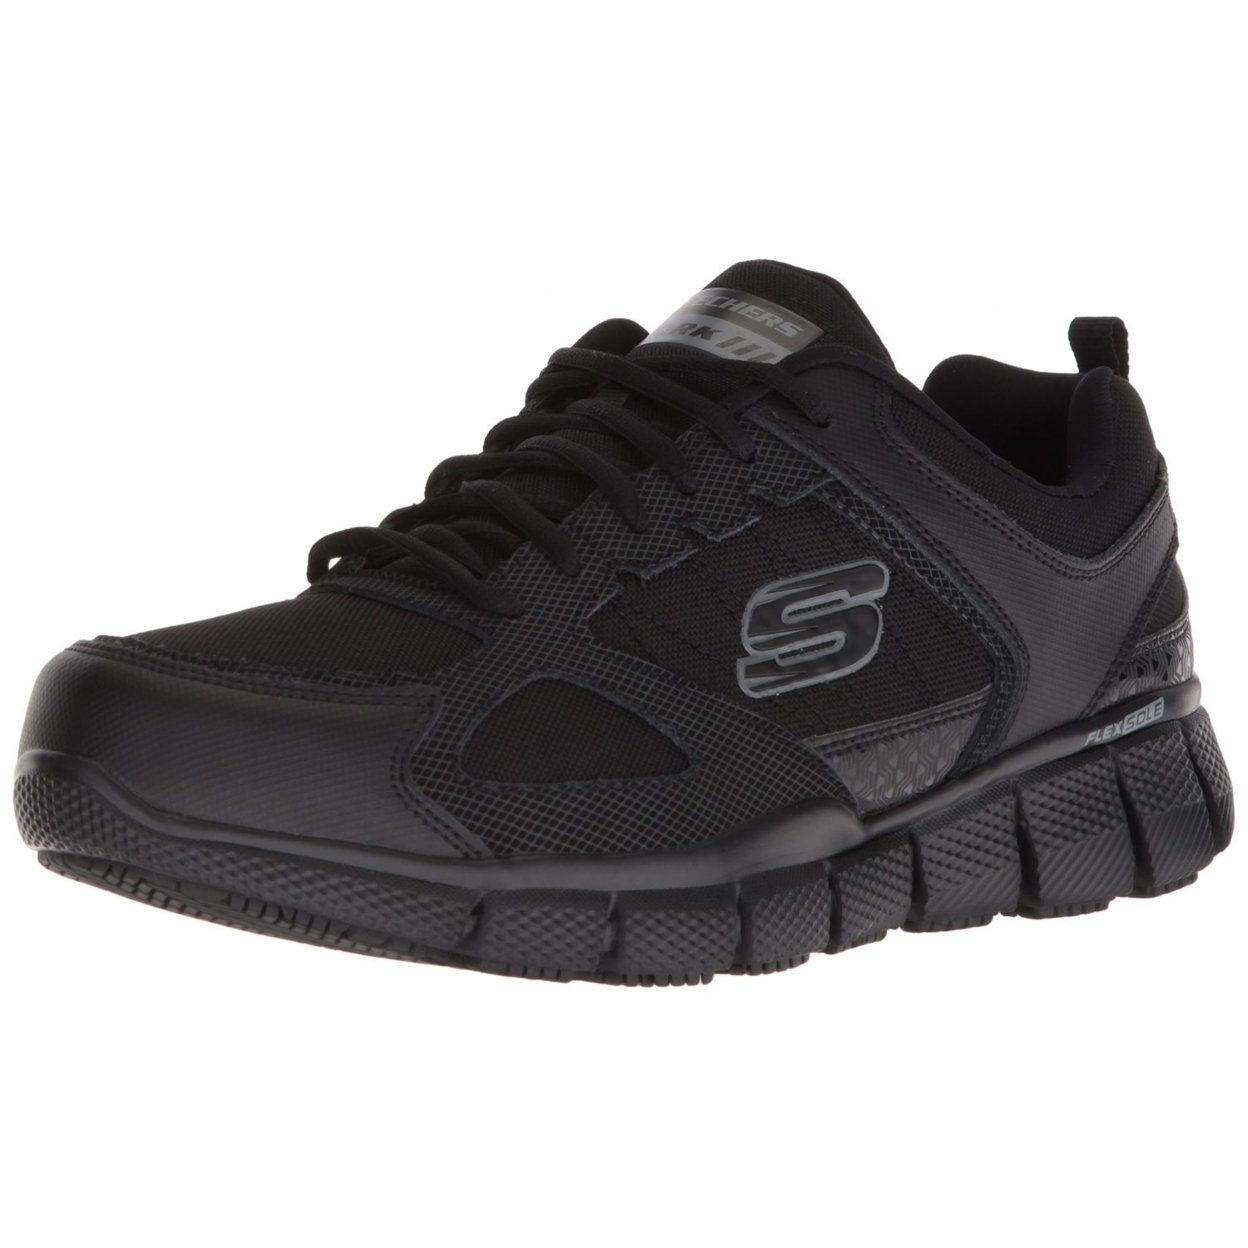 Skechers Men's Telfin-sanphet Industrial Shoe BLACK - BLACK, 11 WIDE